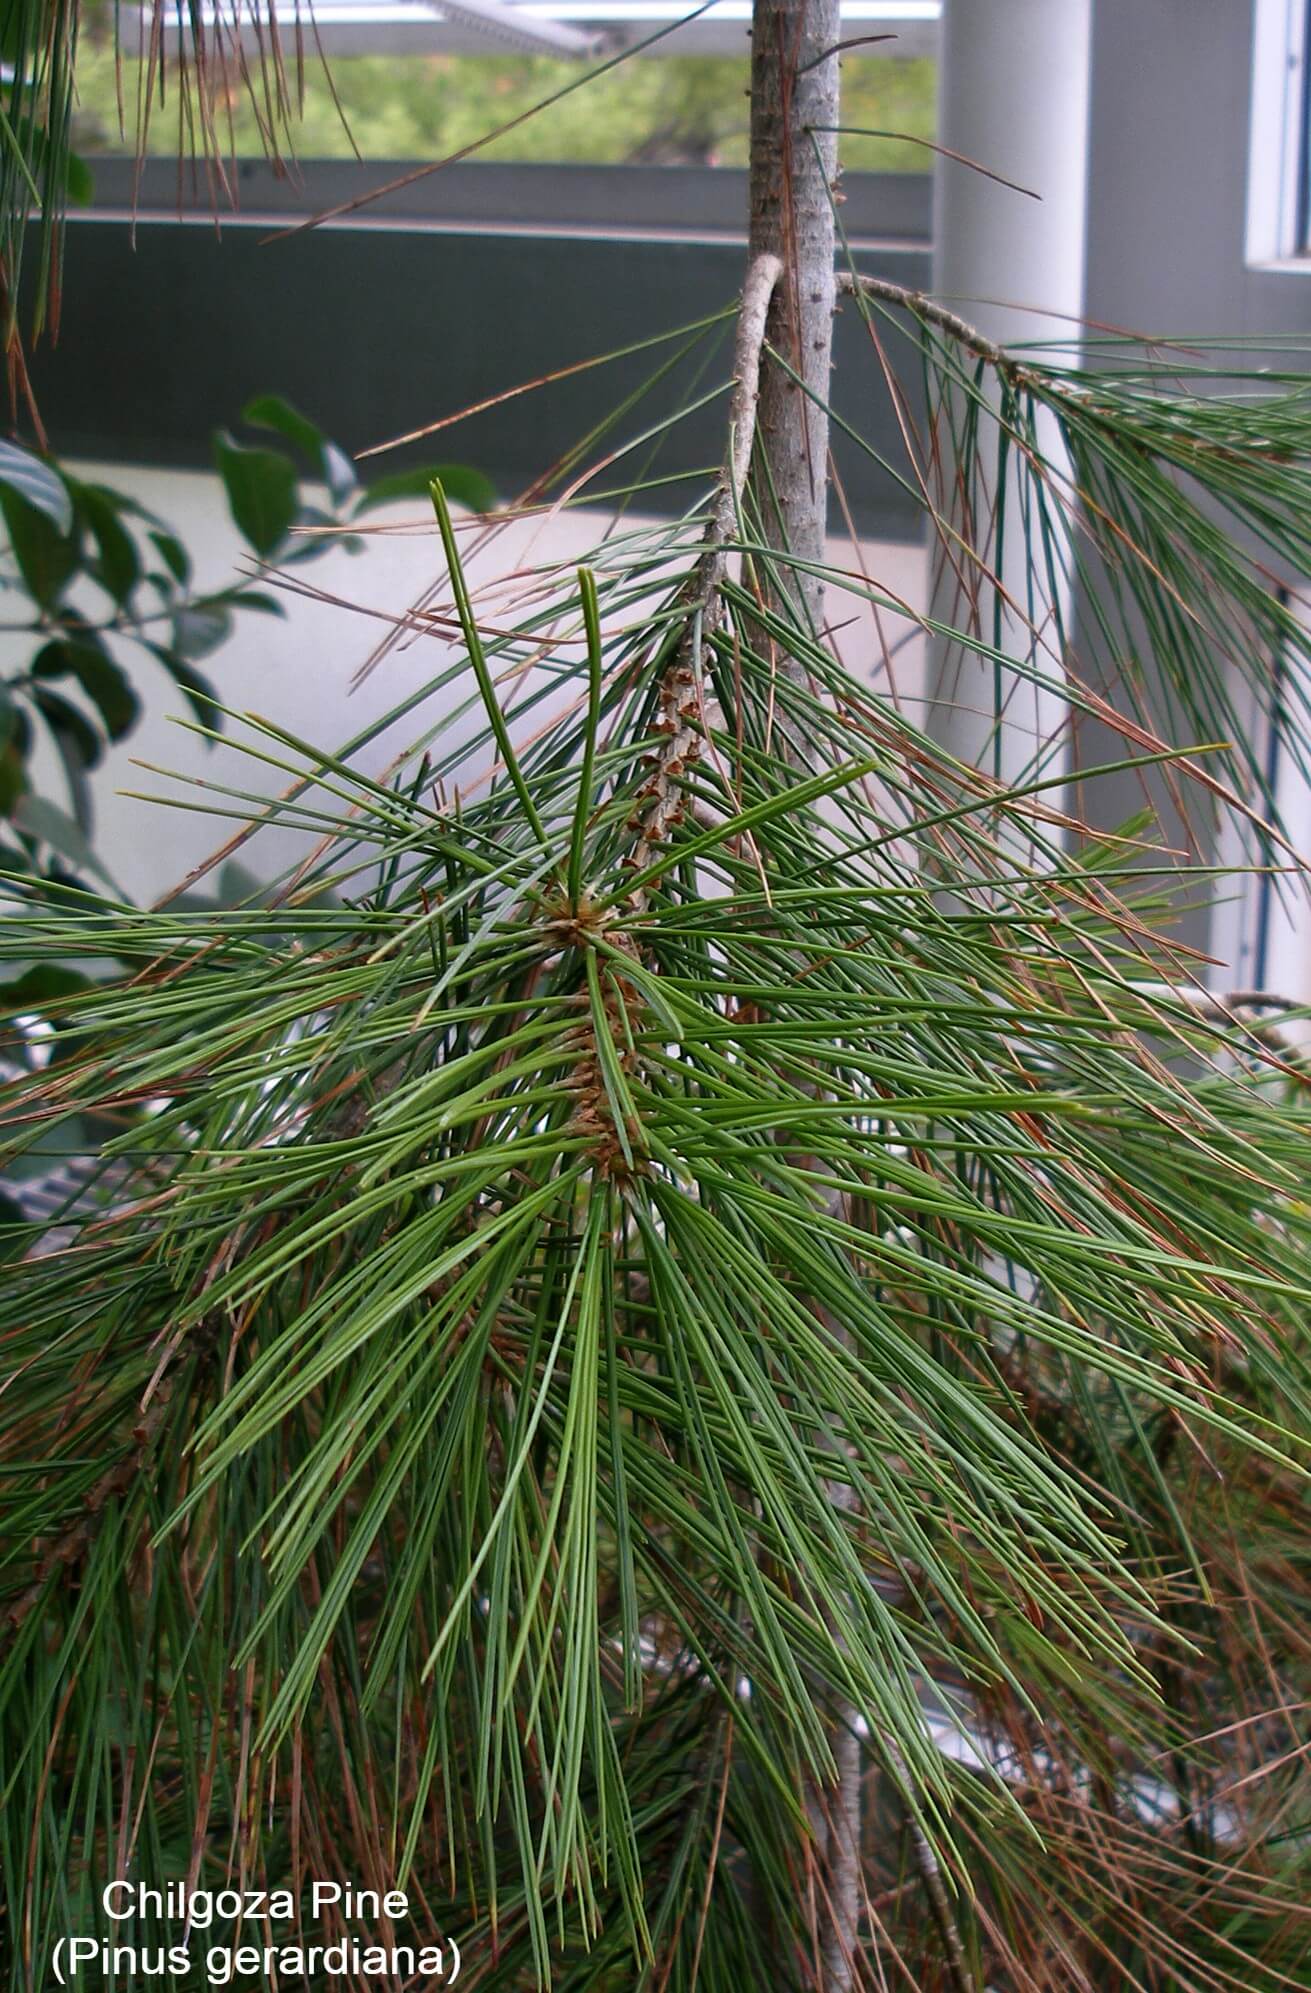 Chilgoza Pine (Pinus gerardiana)